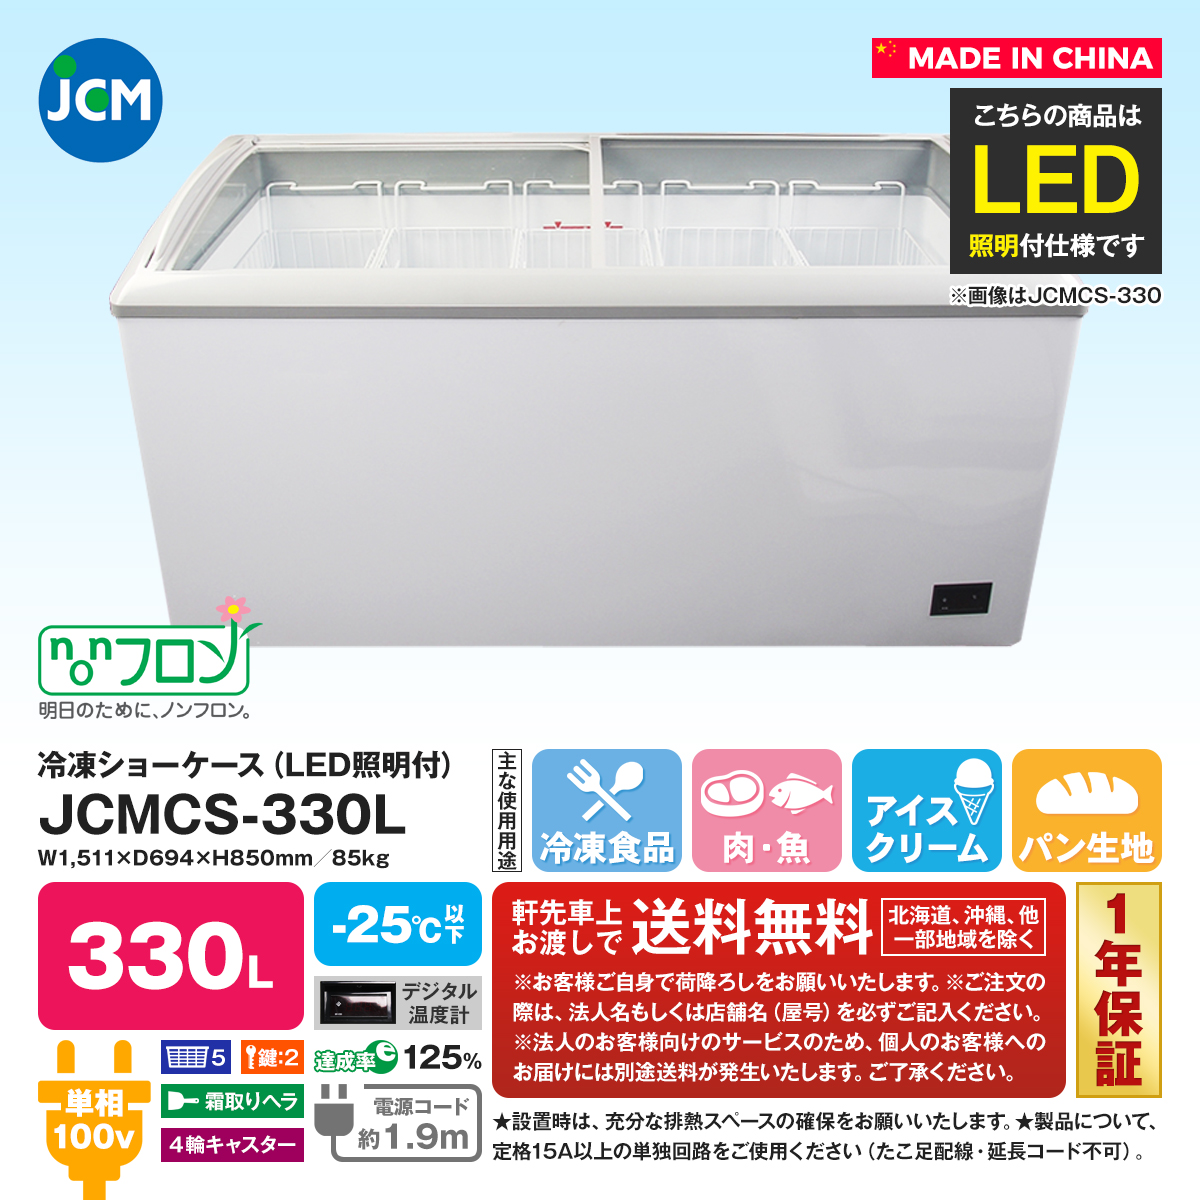 有限会社ユウキ / 【LED照明付】冷凍ショーケース『JCMCS-330L』